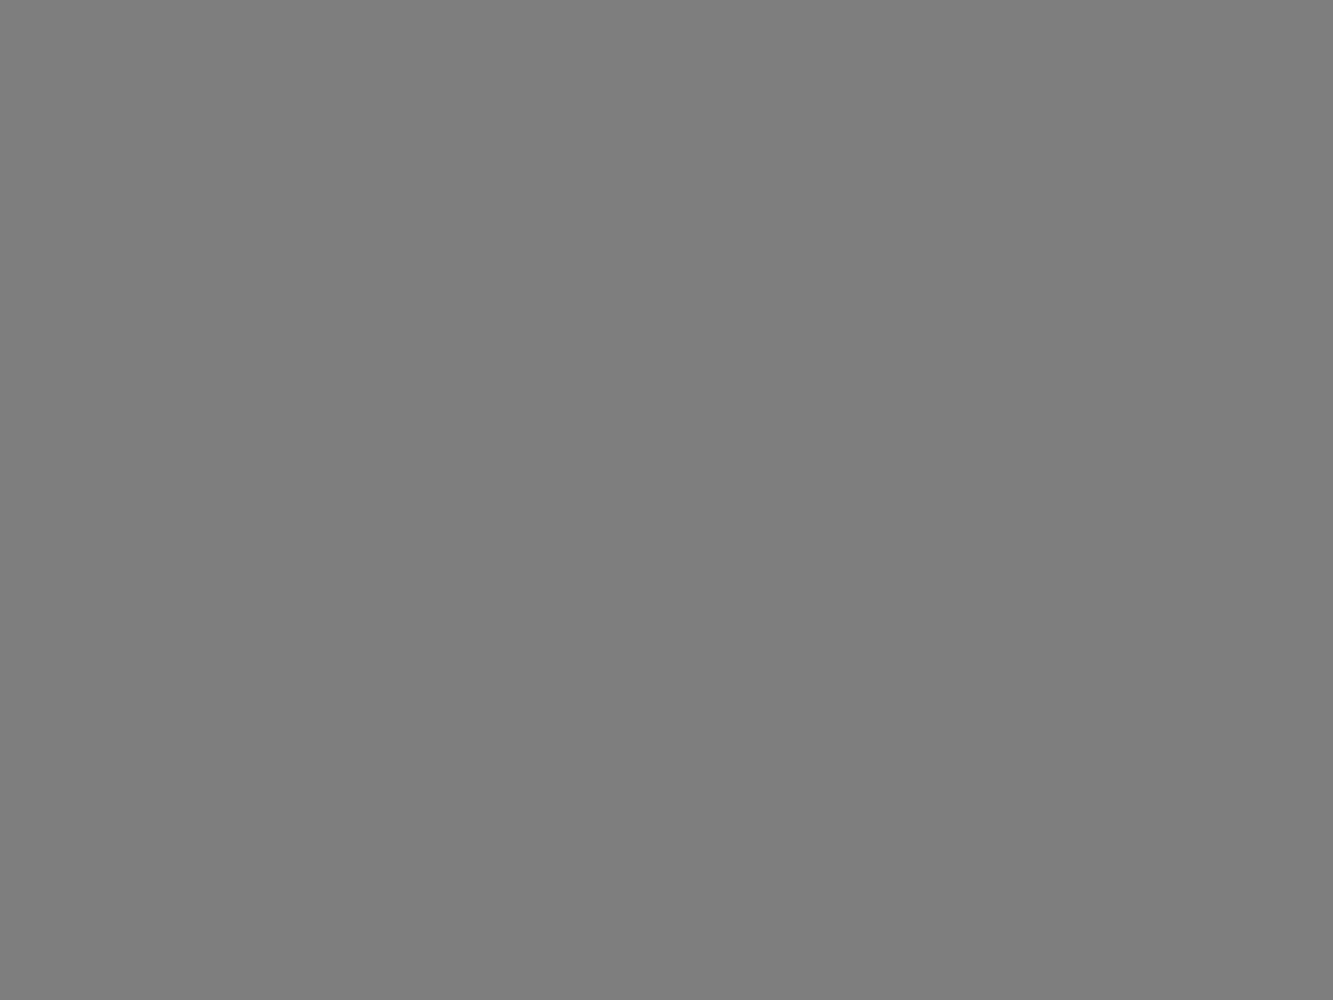 Художник Илья Глазунов заканчивает работу над портретом певицы Елены Образцовой в ее квартире. 1981 год. Фотография: Валентин Мастюков / ТАСС